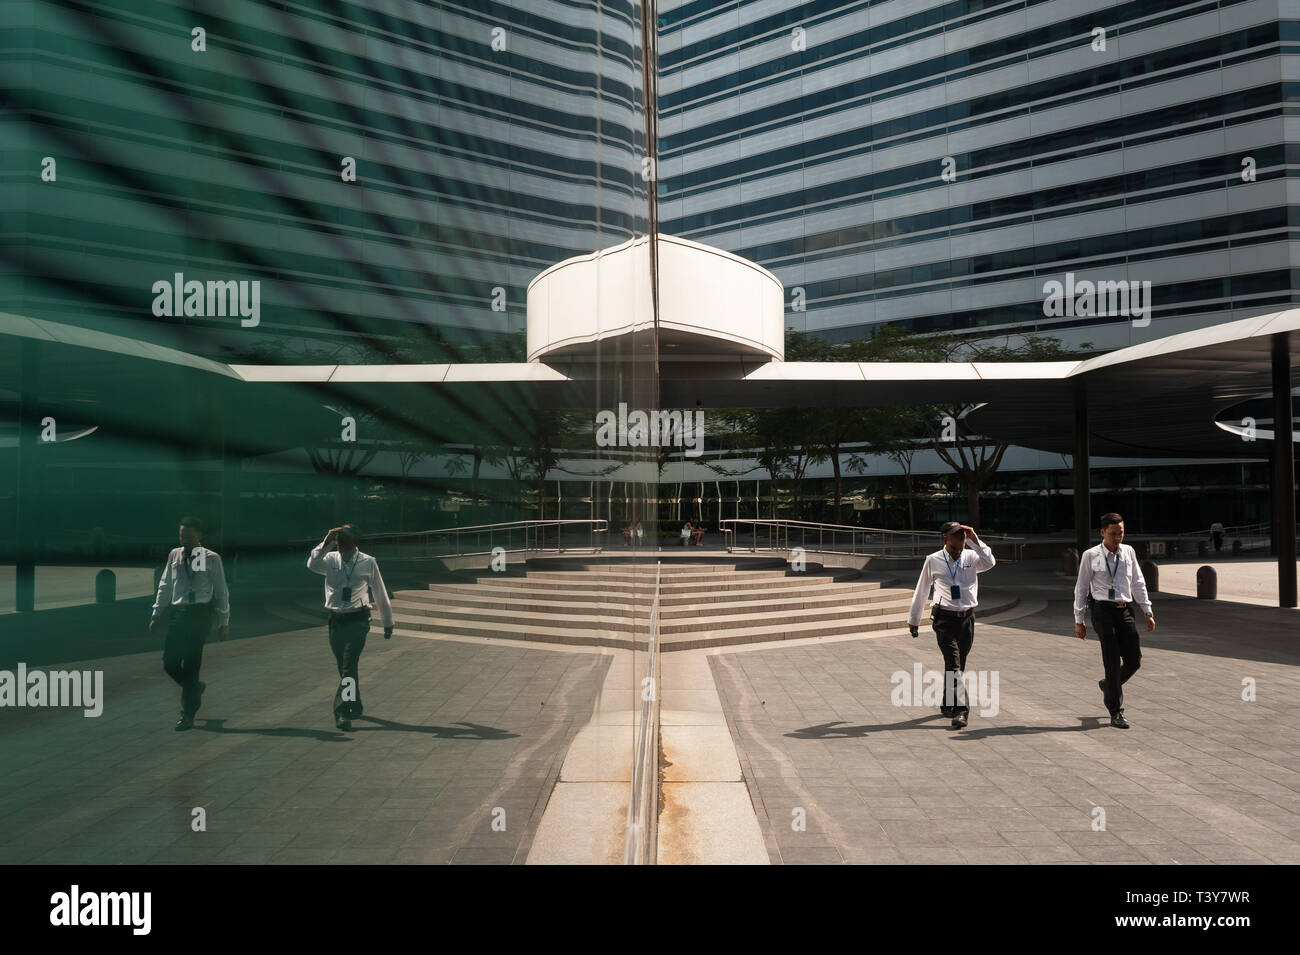 03.02.2018, Singapur, Republik Singapur, Asien - Zwei Mitarbeiter sind am Eingang der Gateway kommerzielle Büros in der Innenstadt gesehen. Stockfoto